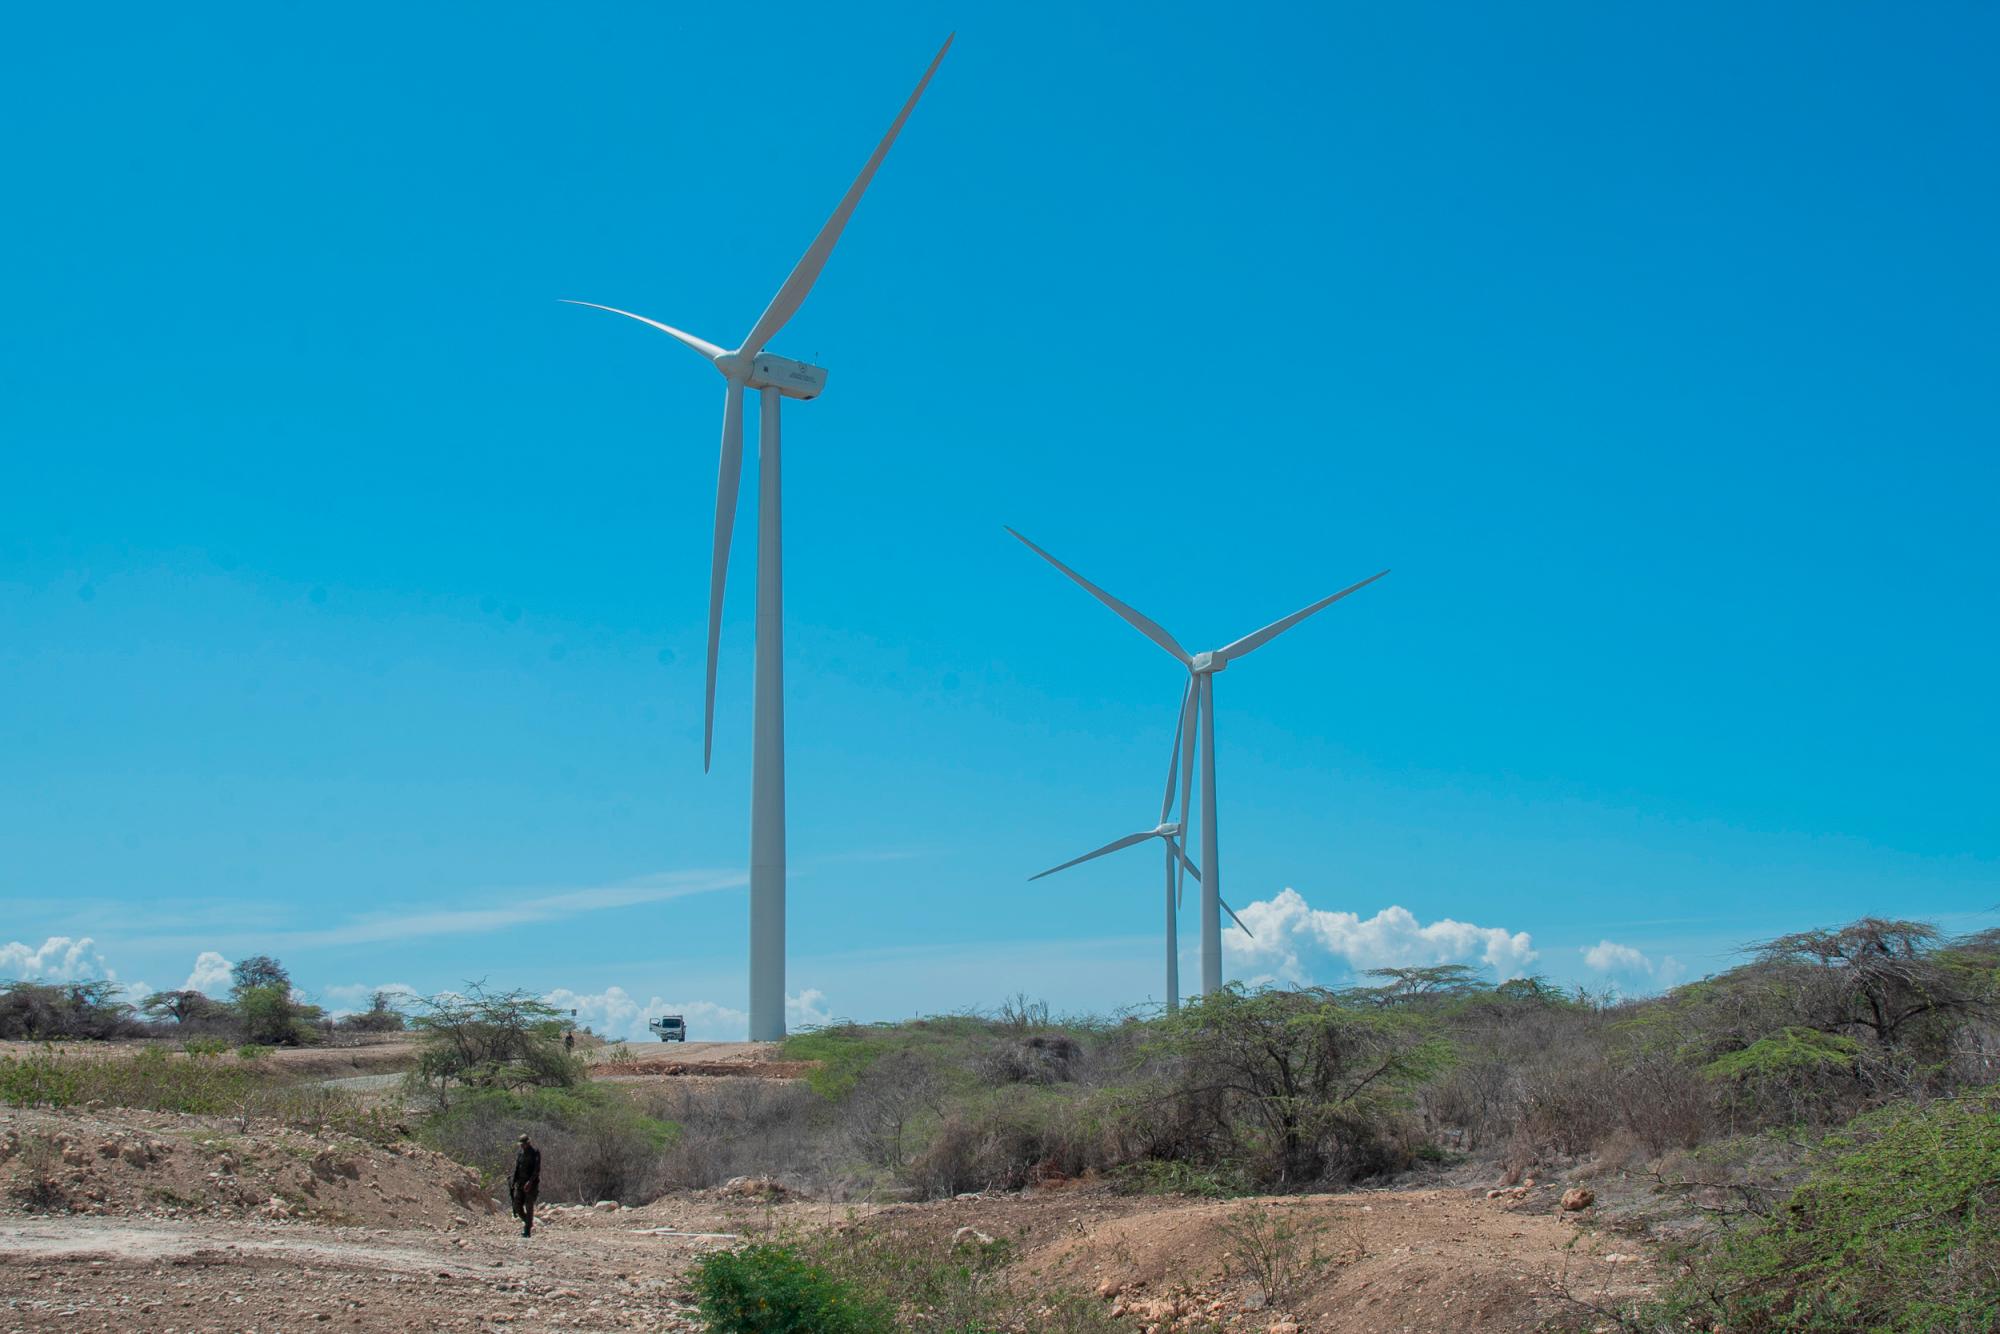 El presidente Danilo Medina dejó en funcionamiento el Parque Eólico Mafongo, con una capacidad de 34 megavatios (MW) y una inversión de 71 millones de dólares. Su producción anual se estima en 91,800 megavatios-hora (MWH), equivalentes a 3,100 horas de producción anual.